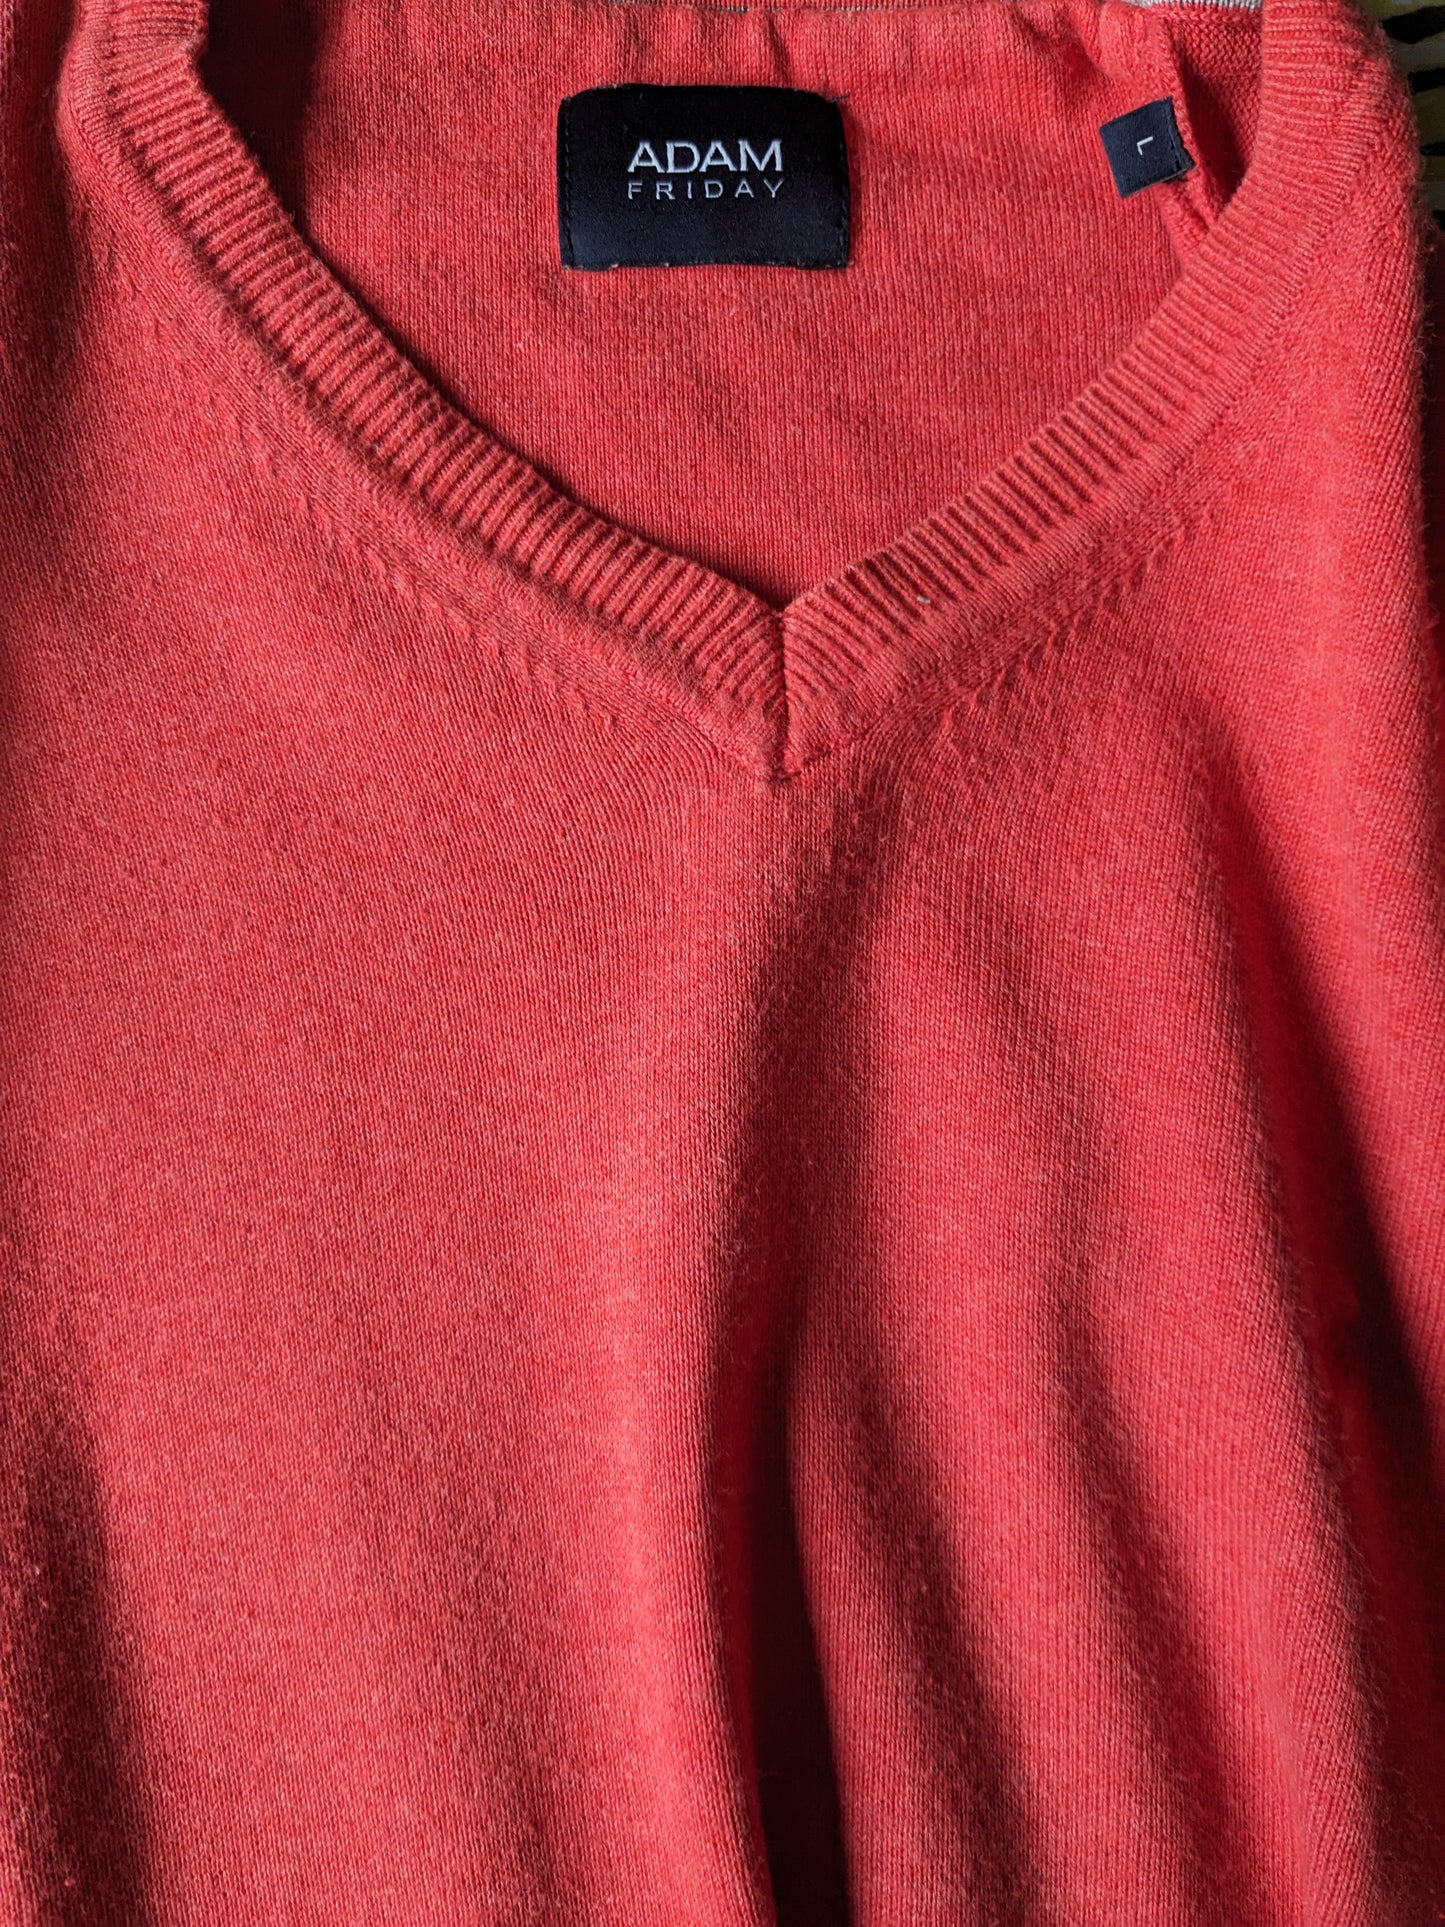 Adam Friday Sweater. Rosa gemischt. Größe L.